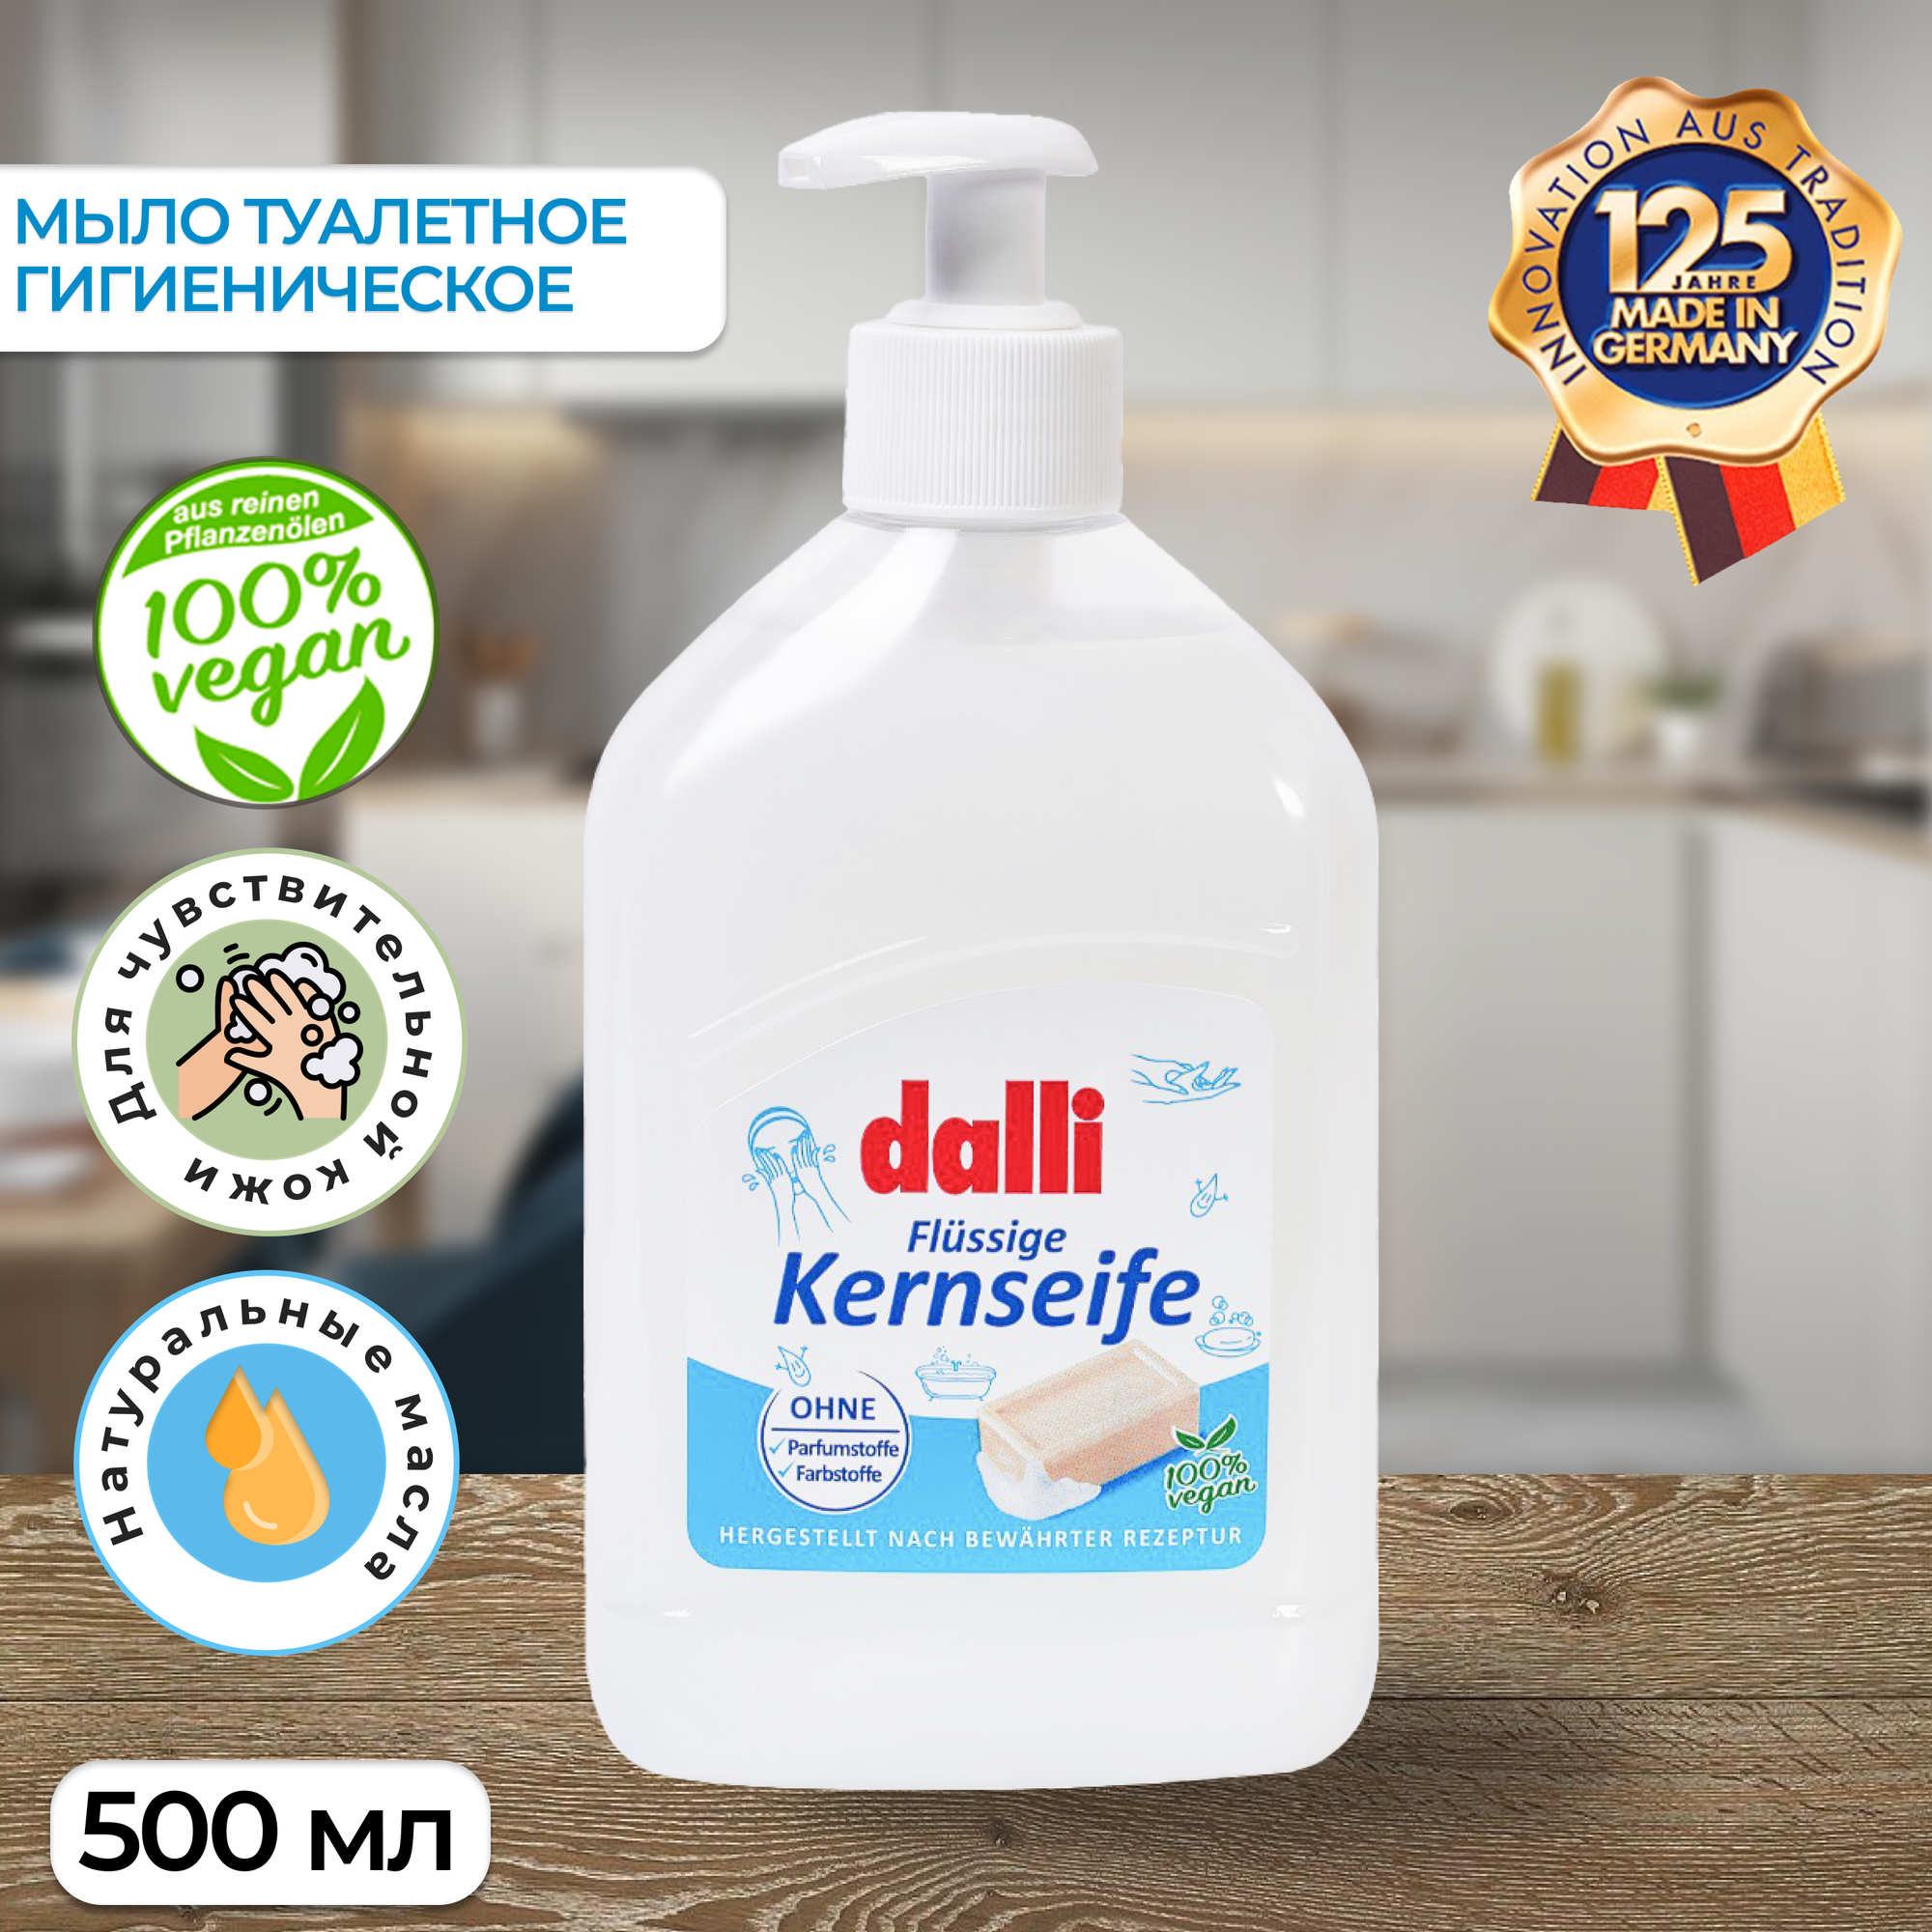 Мыло туалетное гигиеническое жидкое Dalli Kernseife 100% vegan, 500 мл